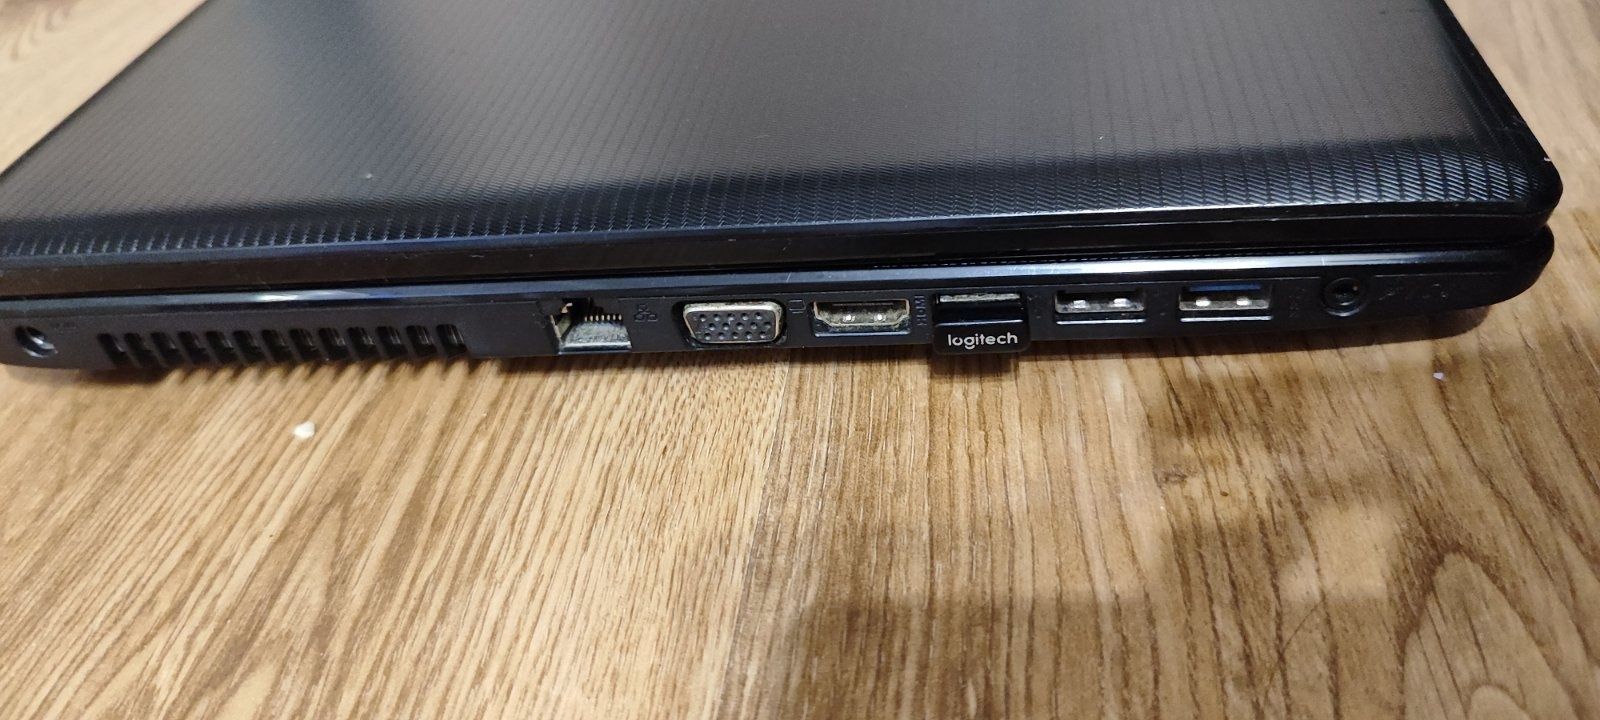 Ноутбук Asus X75V (intel core i5 )